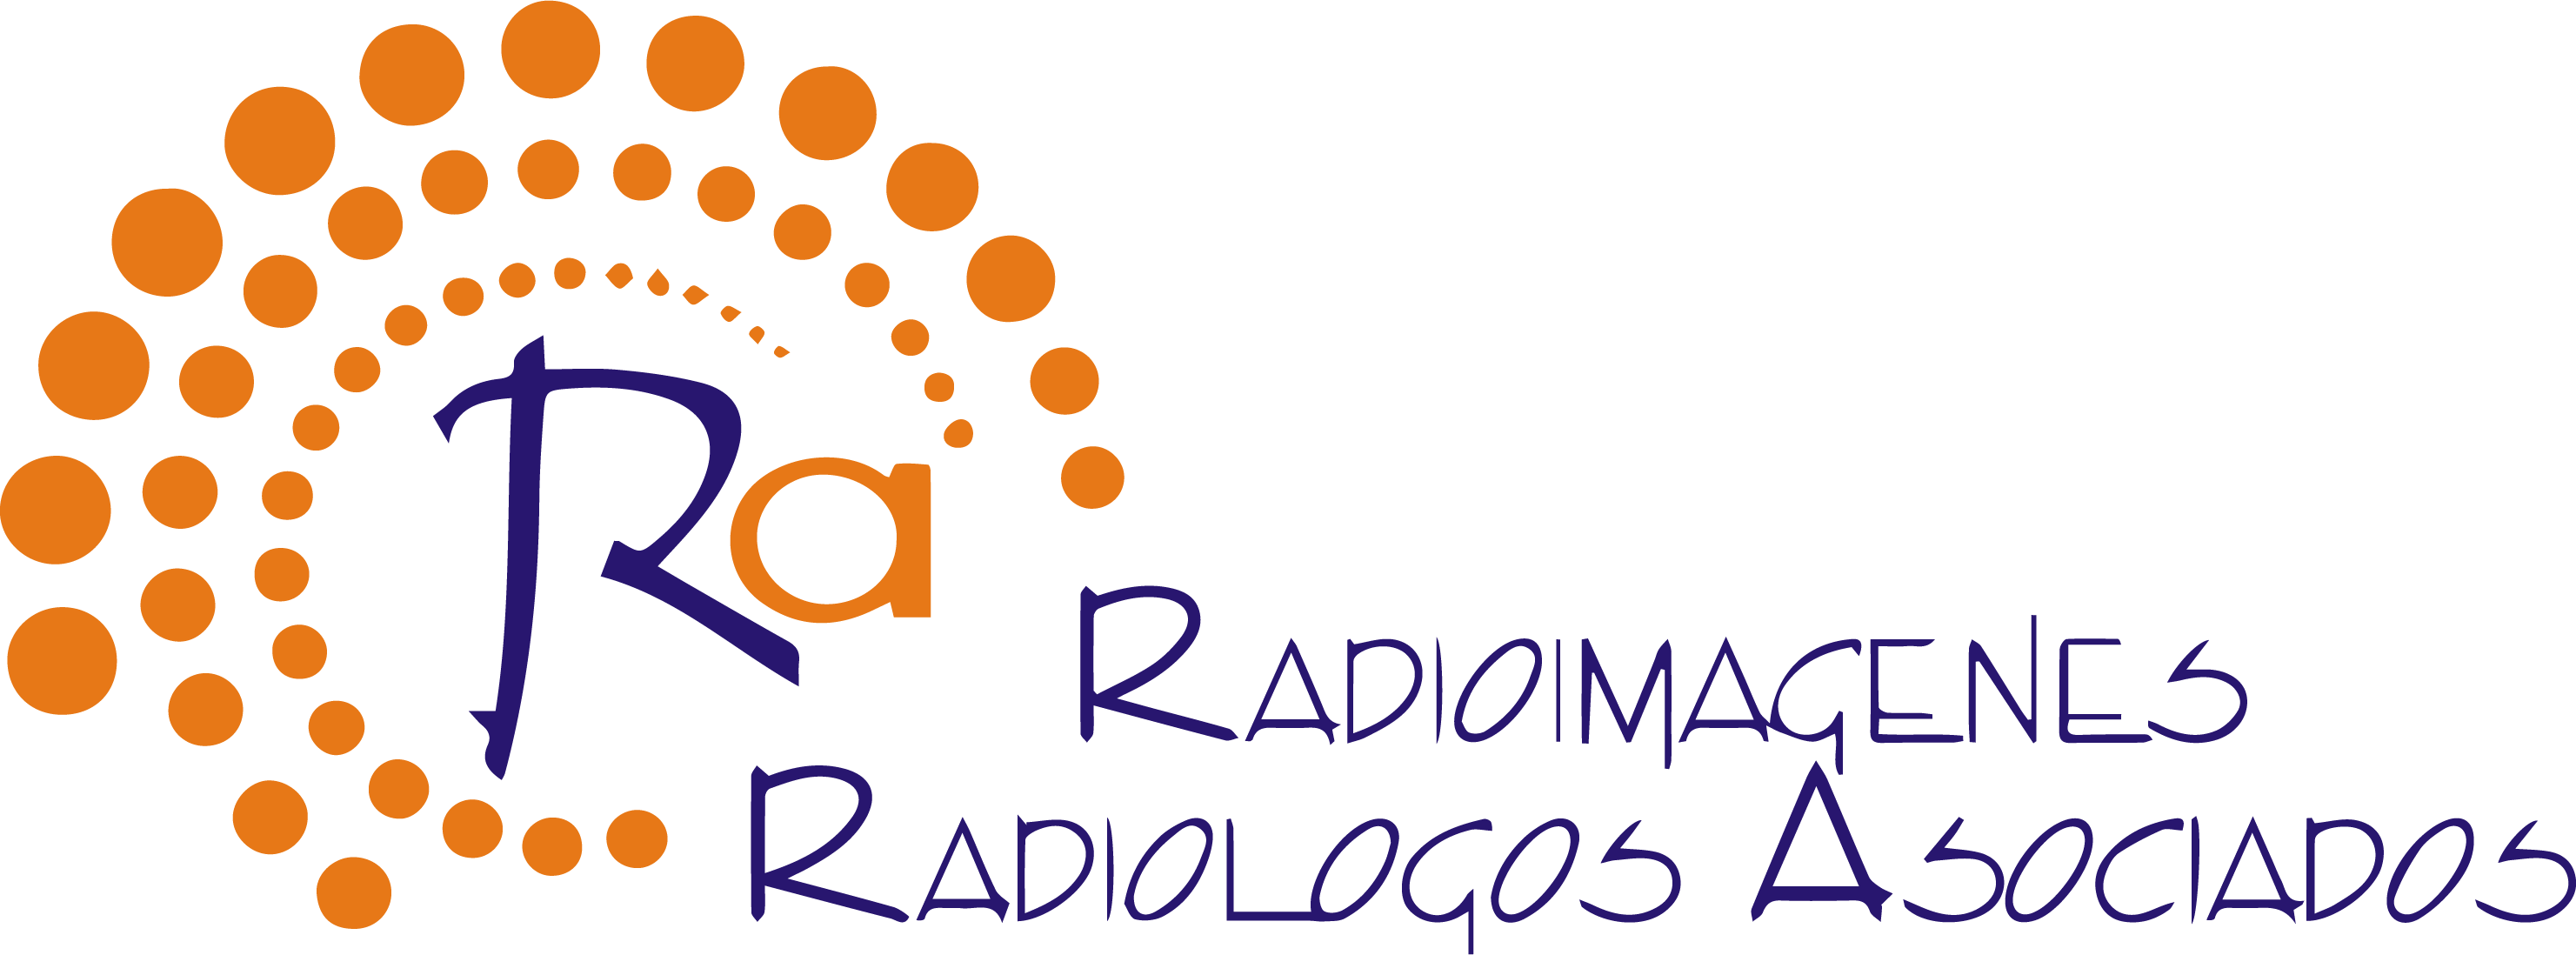 Radiologos cliente oasiscom